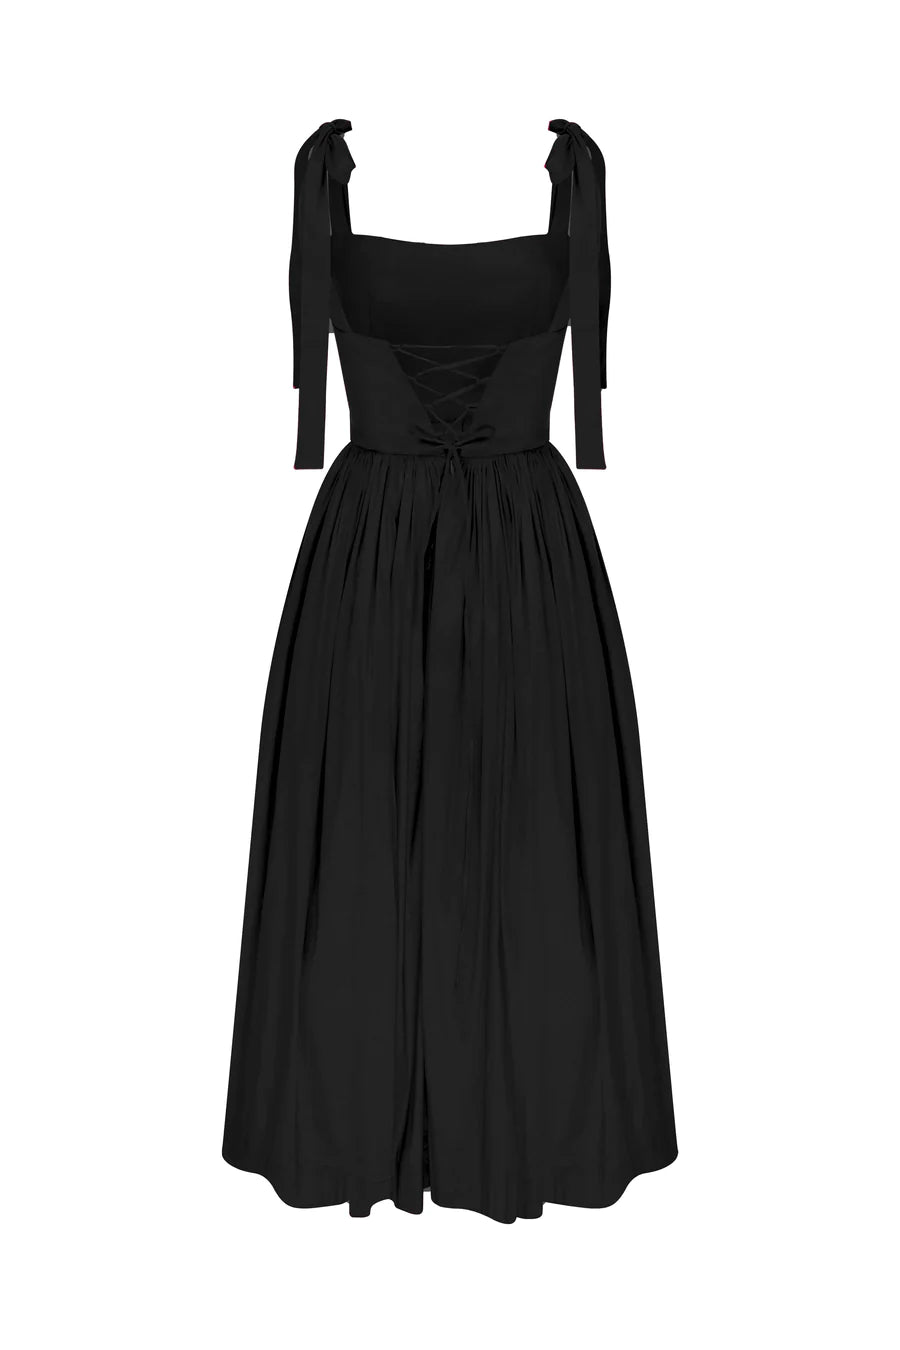 Sibby Midi Dress in Noire